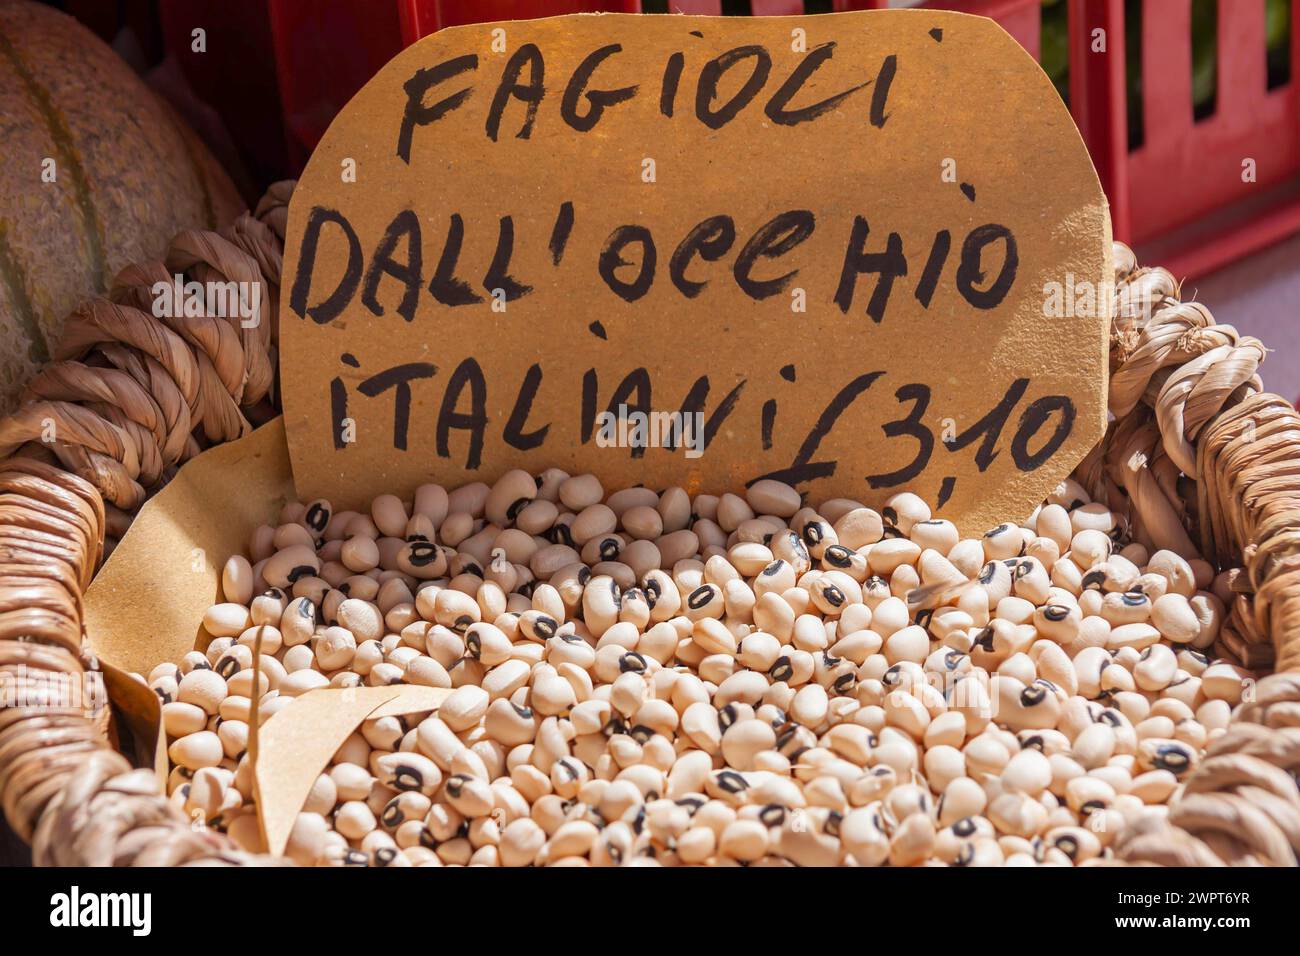 Snap pea (Fagiolo dall'occhio), market sale, weekly market market in Asciano, Crete Senesi, Tuscany, Italy Stock Photo